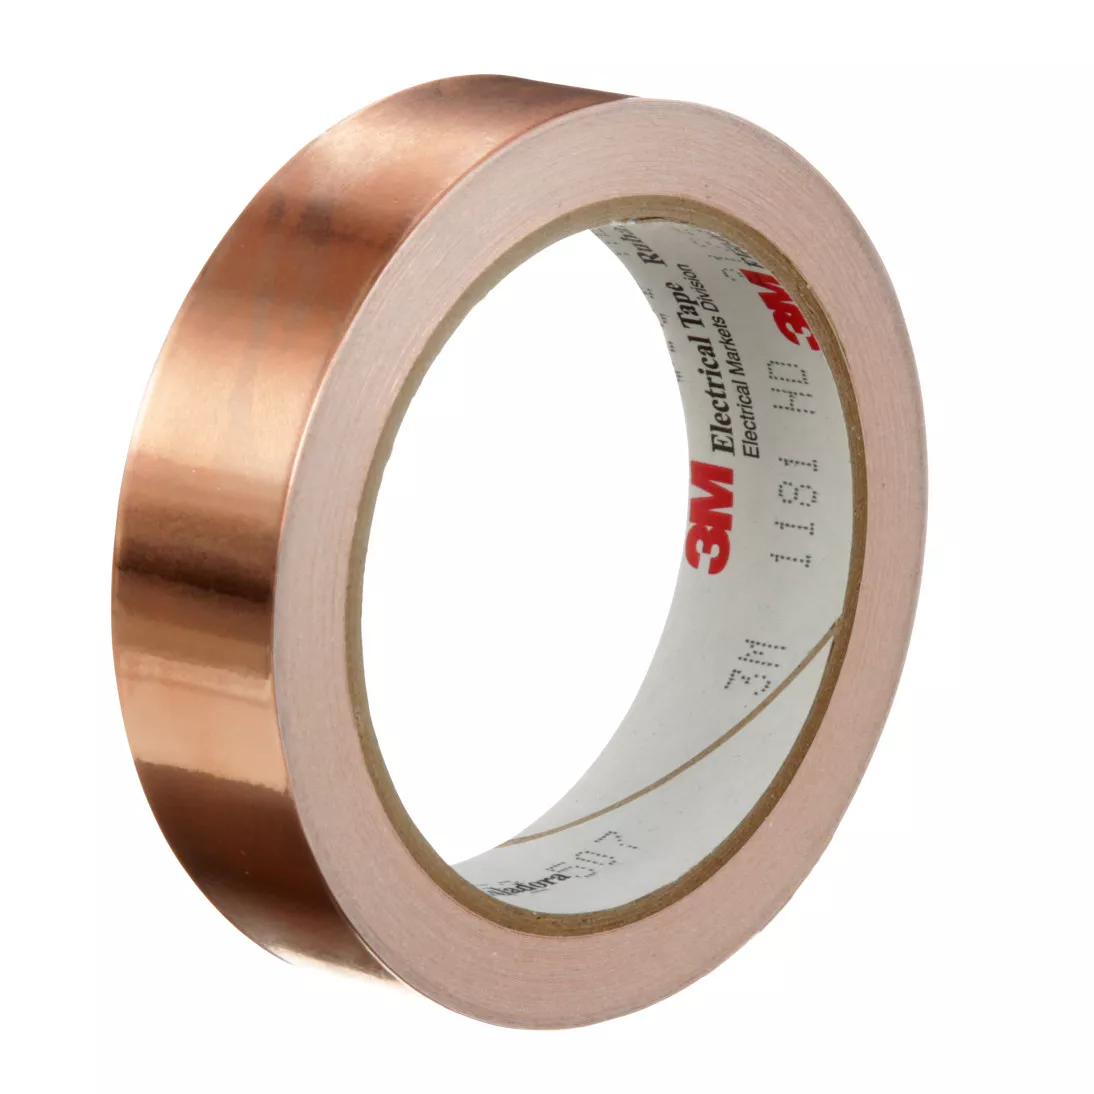 3M™ EMI Copper Foil Shielding Tape 1181, 1 in x 18 yd (25,40 mm x 16,5
m), 9 per case